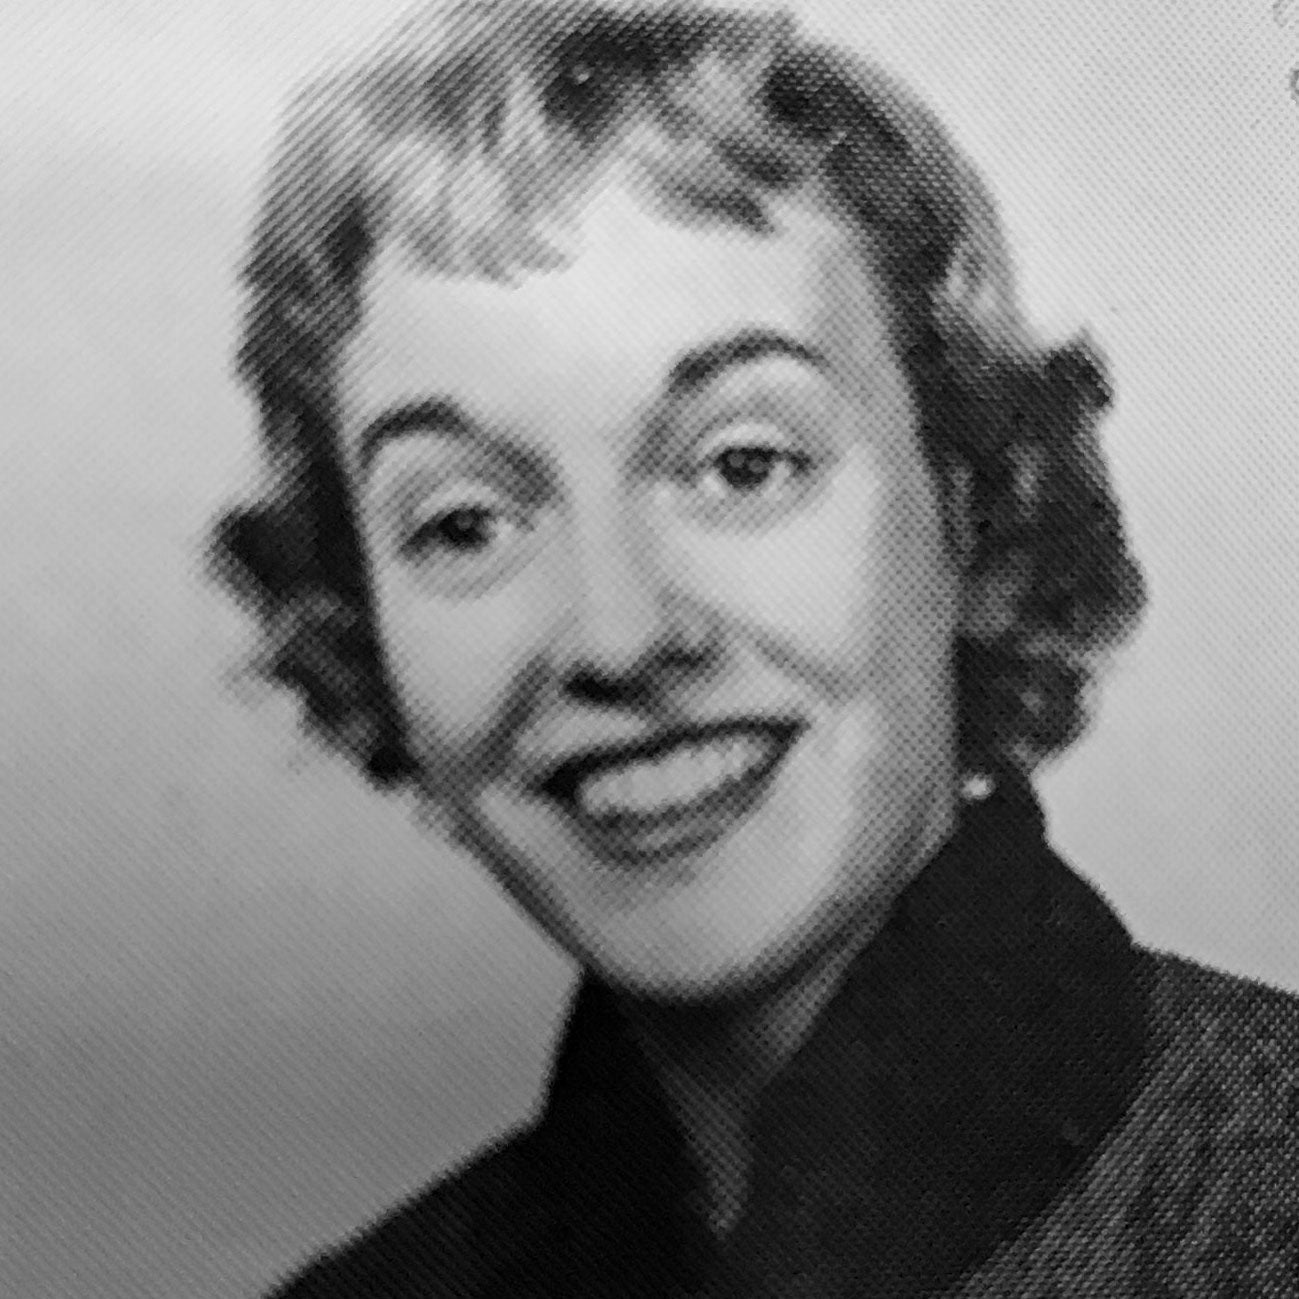 Yearbook photo of Virginia Davis Nordin.